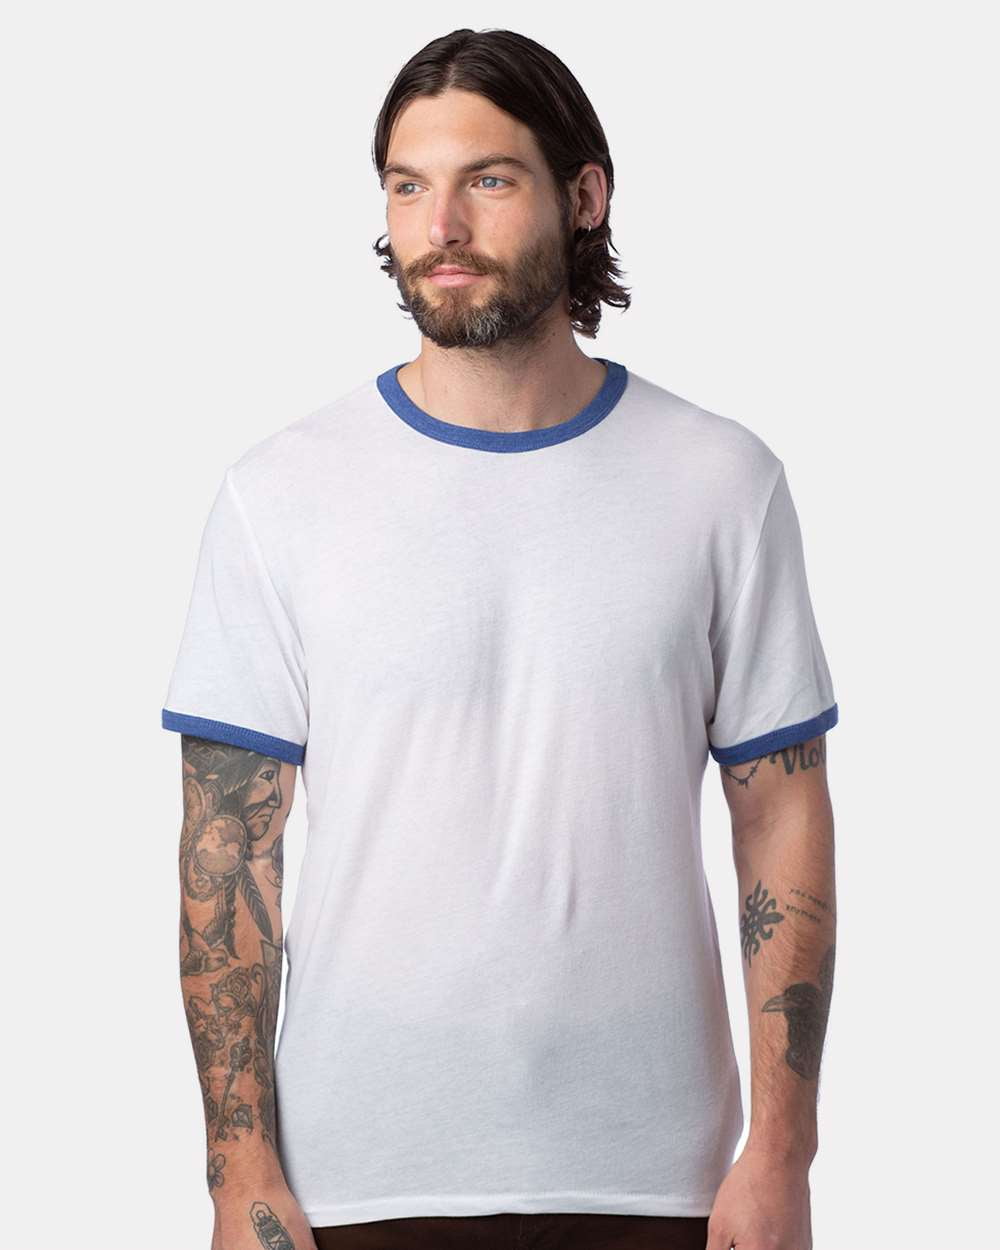 Unisex T-Shirt - Keeper WHITE/ L - NAVY Ringer